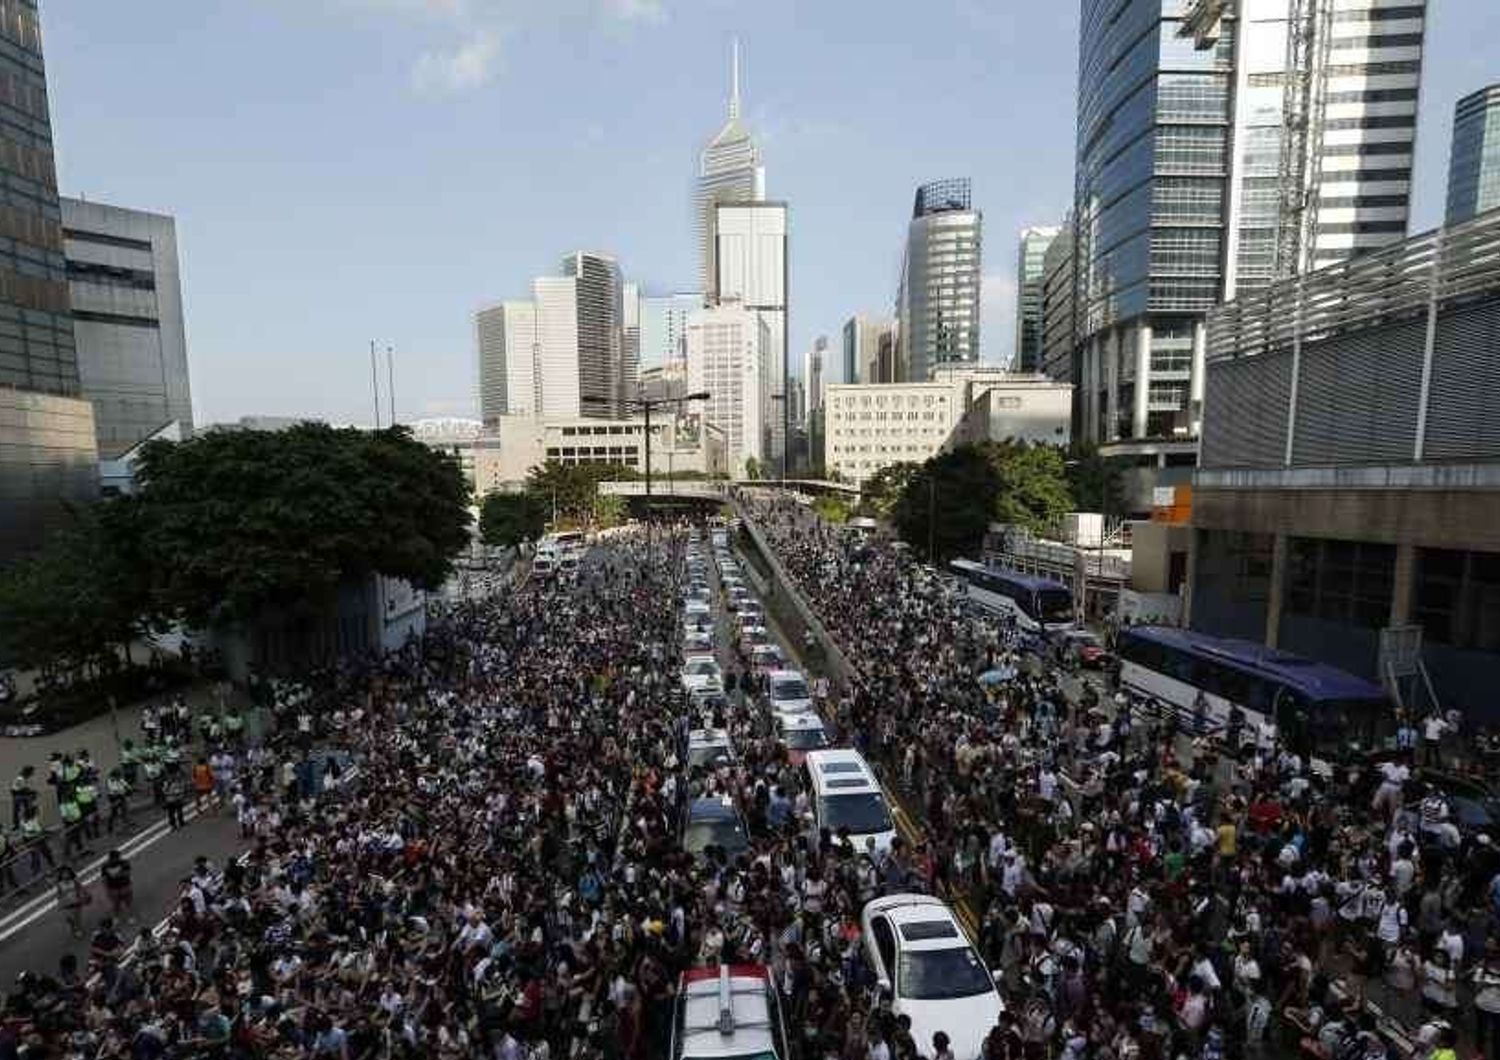 Dilaga la protesta anti-Pechino a Hong Kong: migliaia di manifestanti per le strade - FOTO